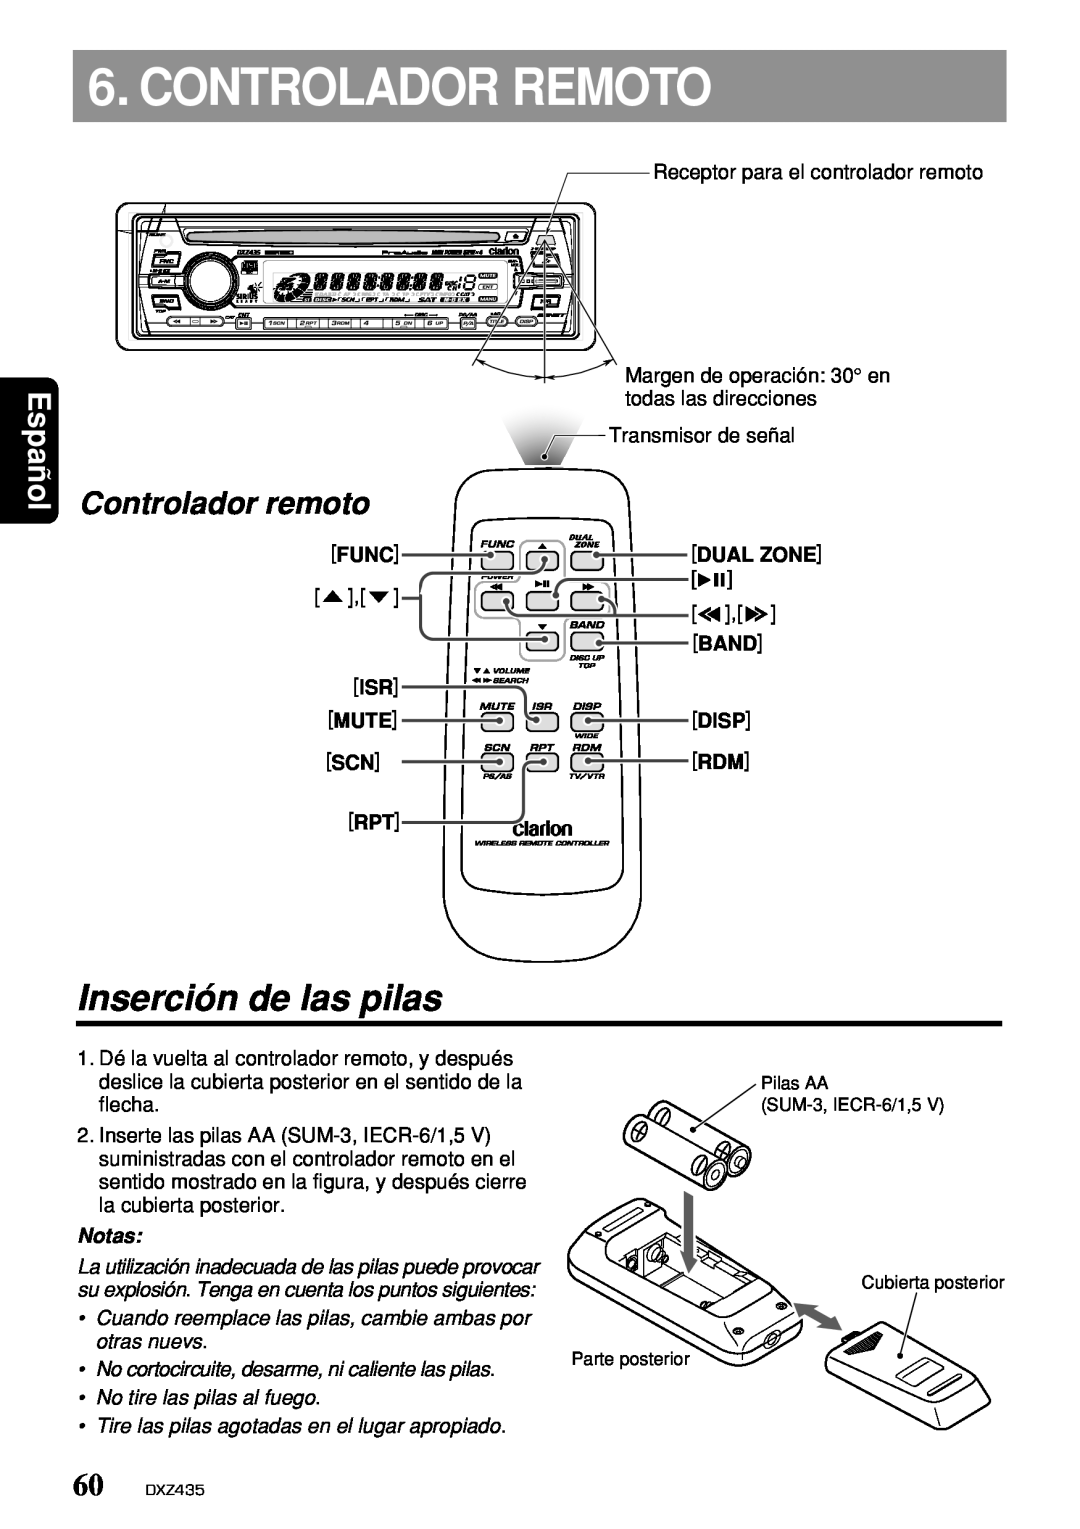 Clarion DXZ435 owner manual Controlador Remoto, Inserción de las pilas, Controlador remoto, Español, Notas 